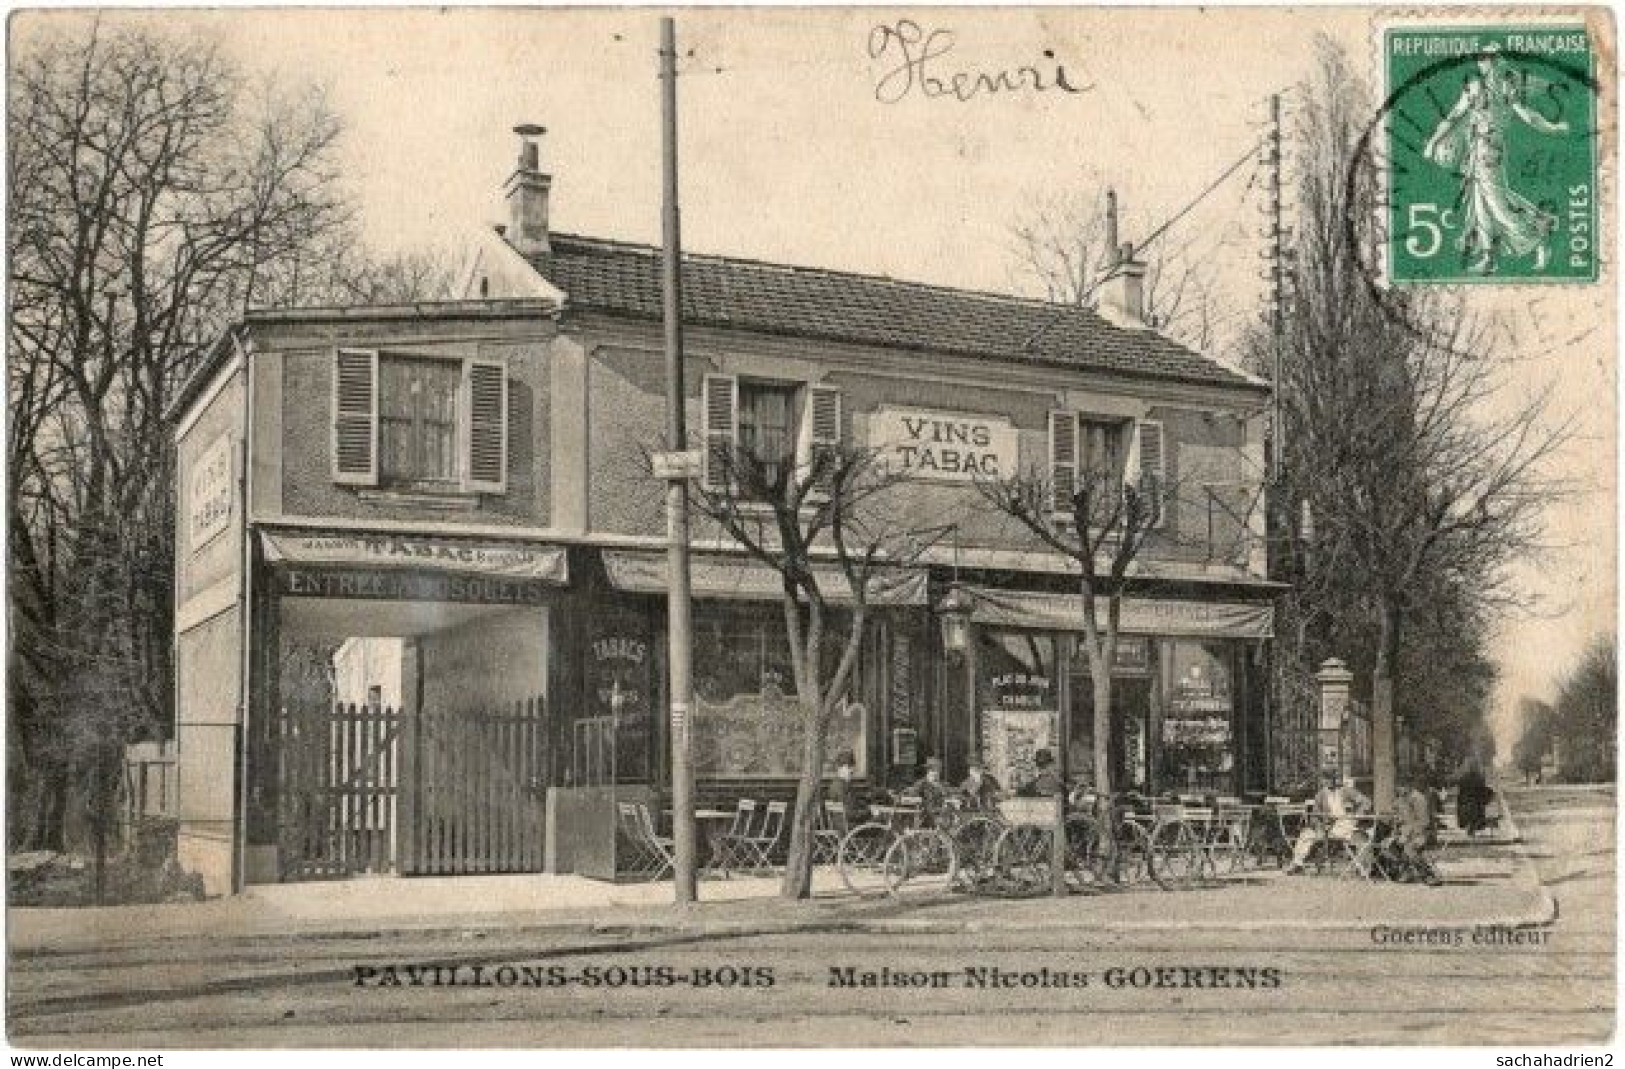 93. PAVILLONS-SOUS-BOIS. Maison Nicolas Goerens - Les Pavillons Sous Bois